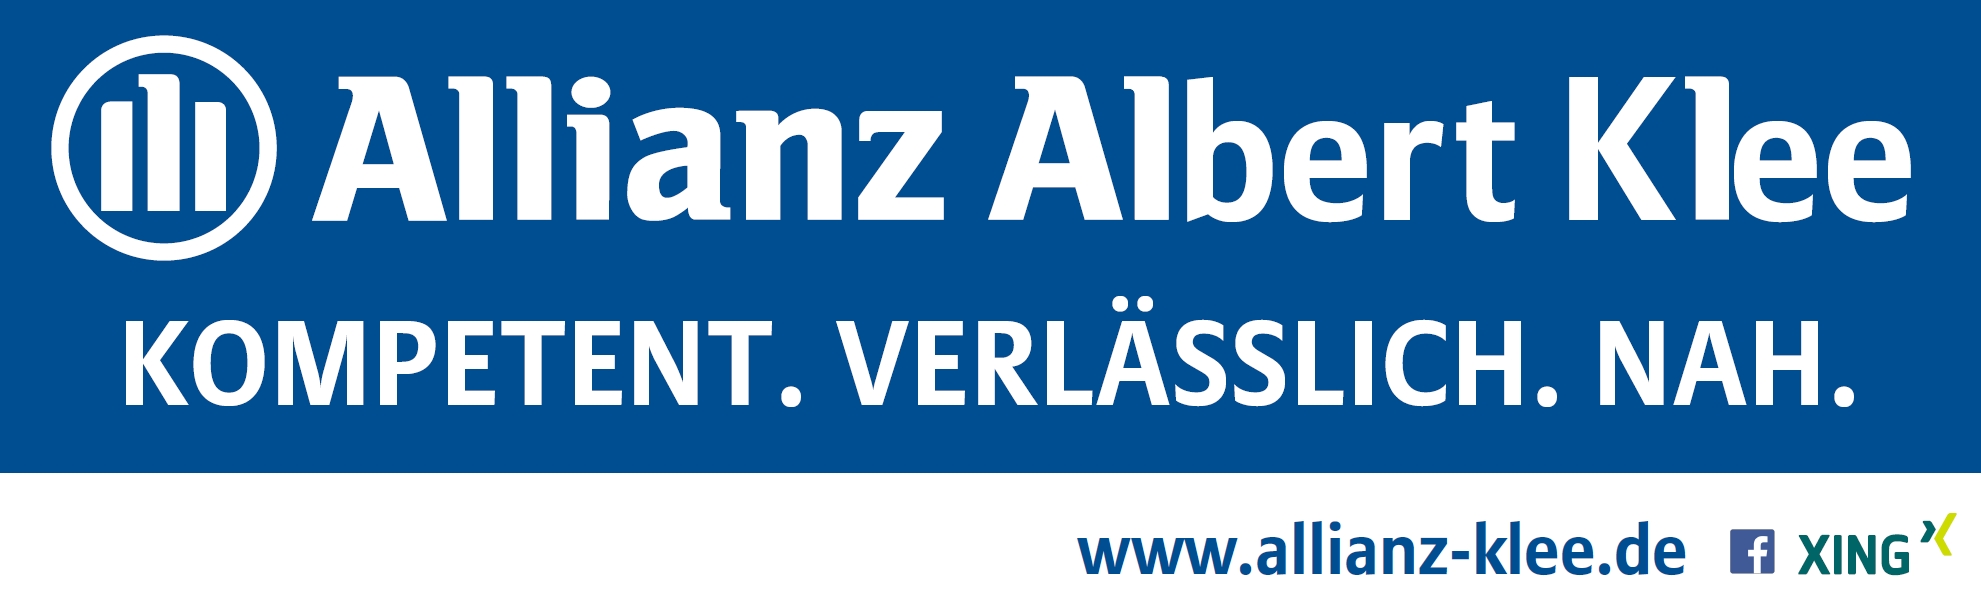 www.allianz-klee.de